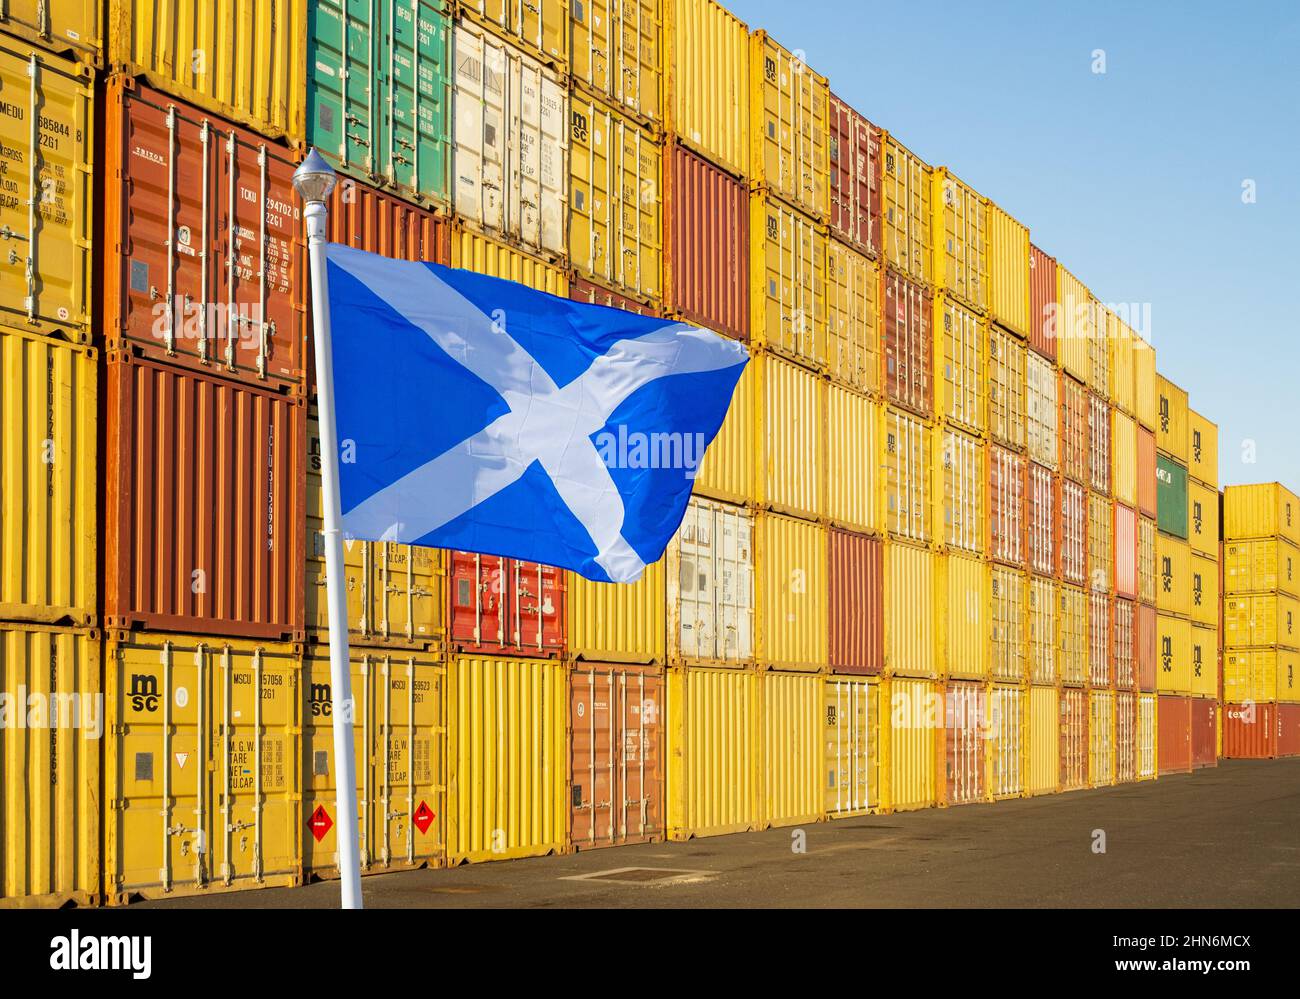 Bandiera della Scozia con contenitori impilati in background. Freeport, Freeport, Brexit, import, export, economia, commercio... concetto Foto Stock